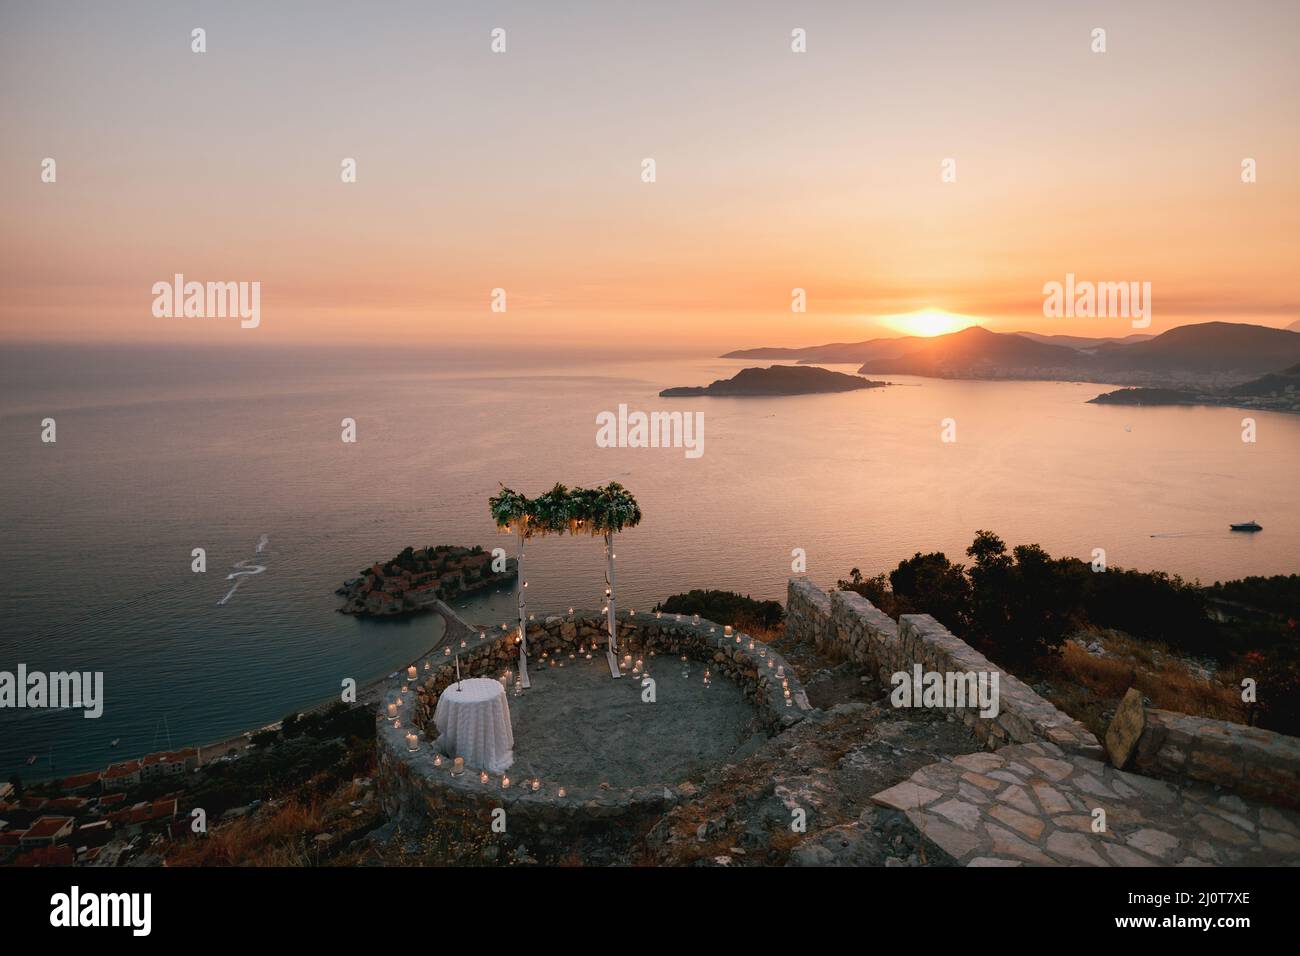 Arche de mariage sur la terrasse d'observation surplombant l'île de Sveti Stefan au coucher du soleil Banque D'Images